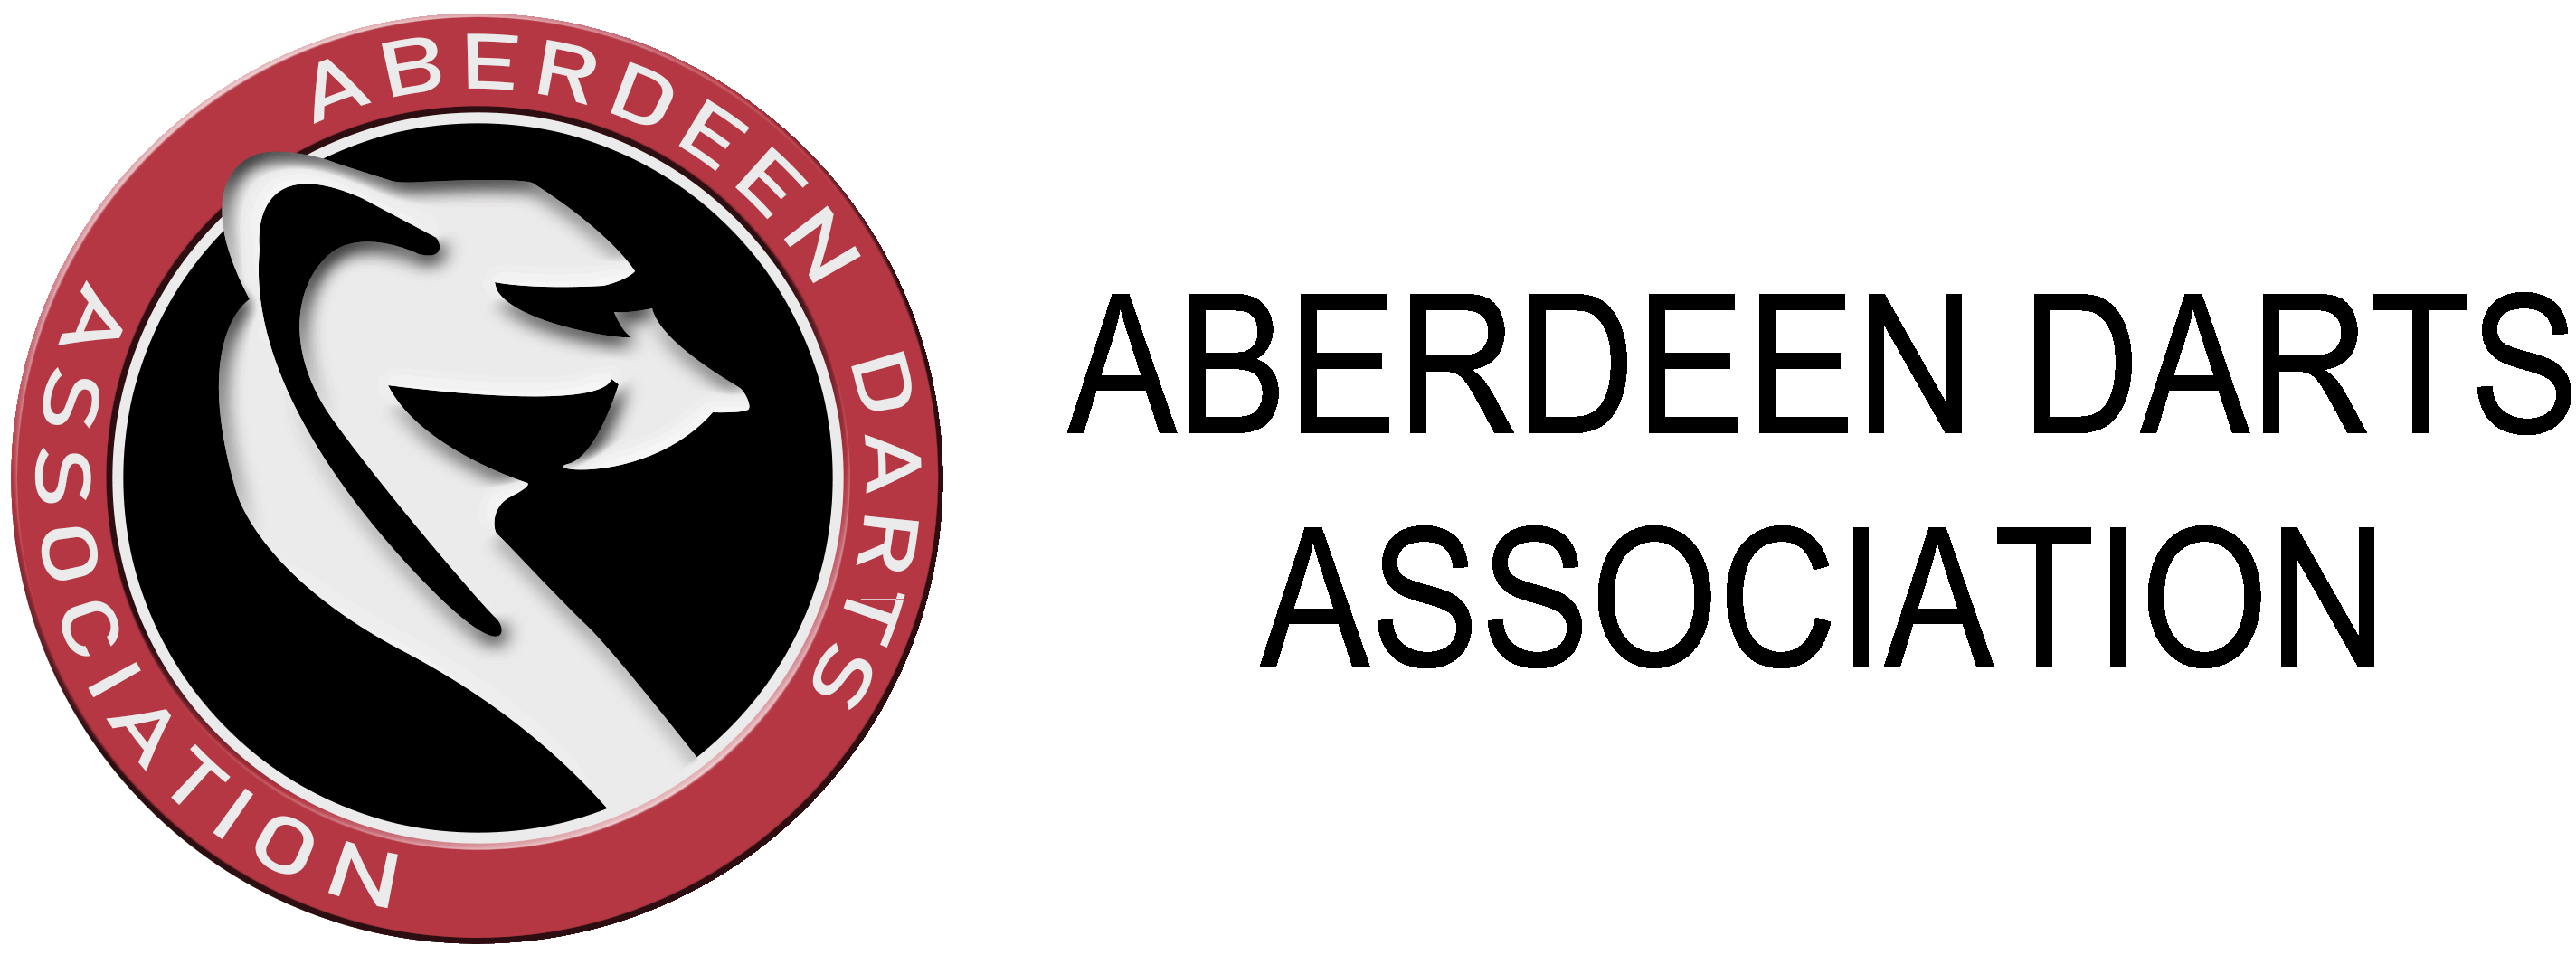 Aberdeen Darts Association